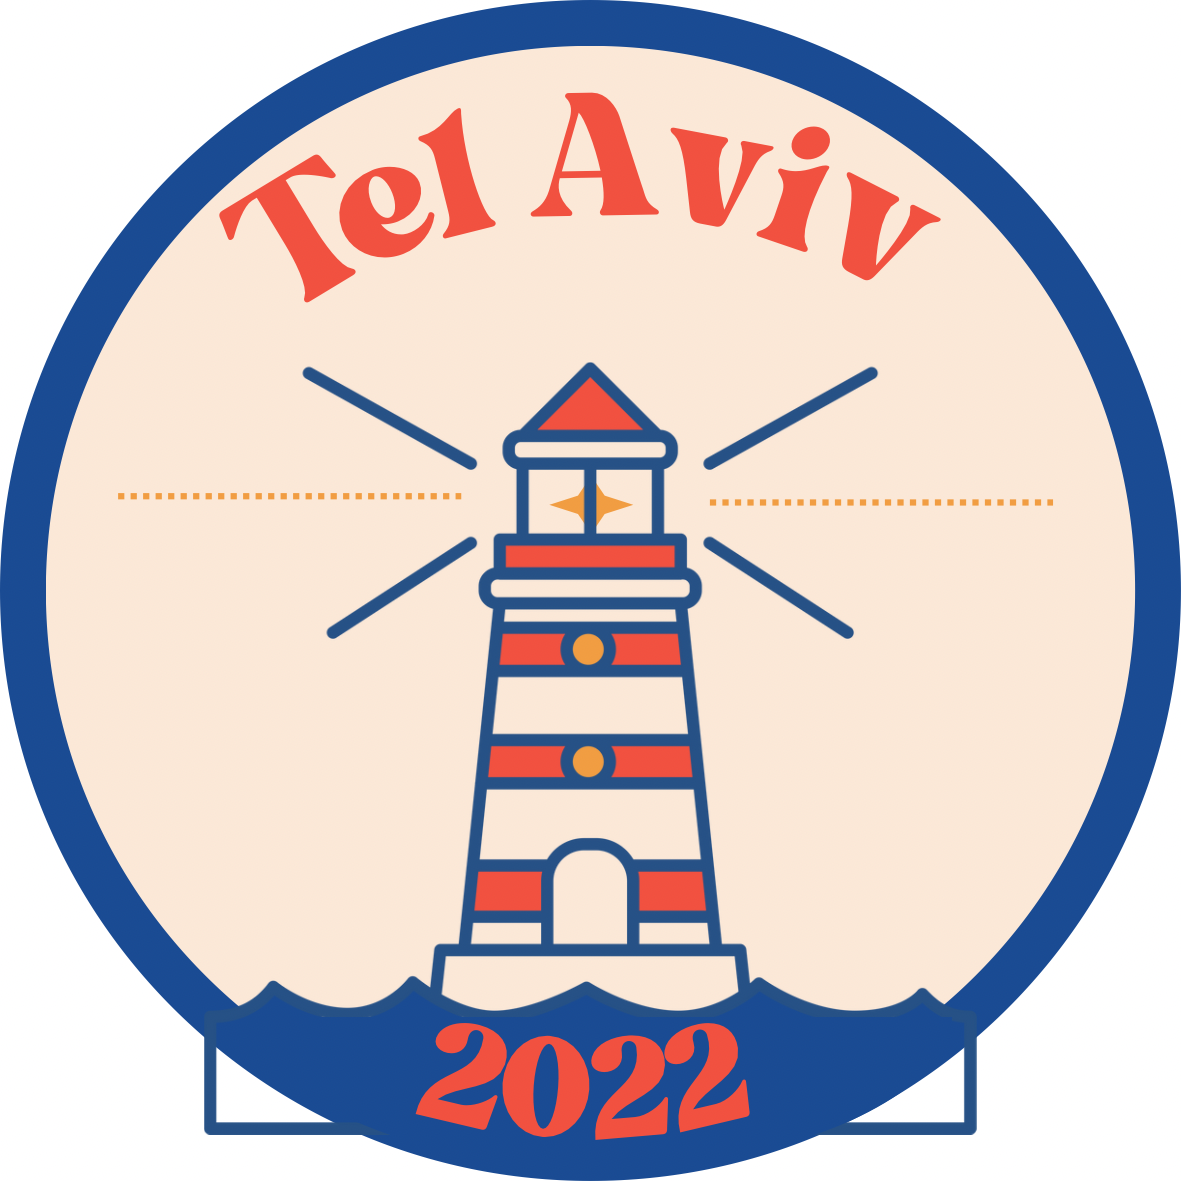 Azhia's Tel Aviv Sticker Pack